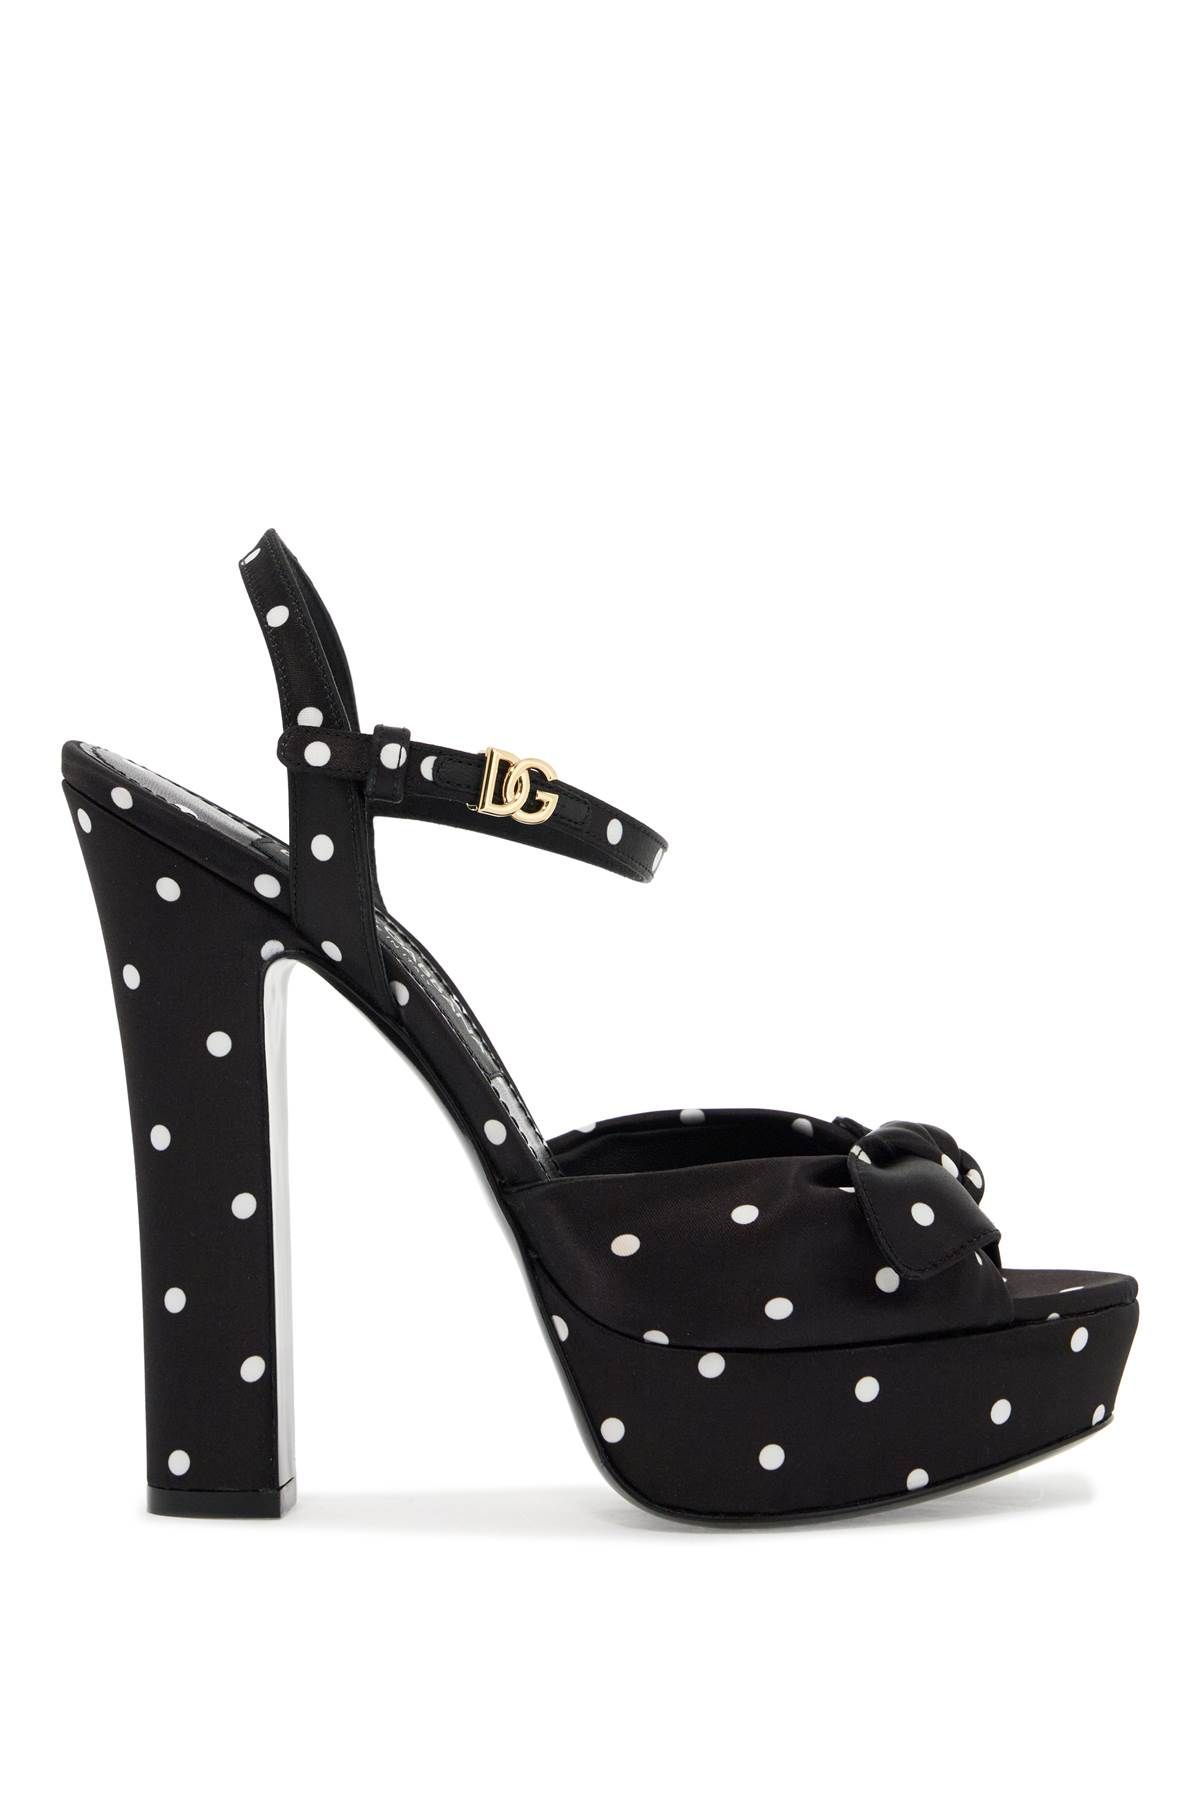 Dolce & Gabbana DOLCE & GABBANA "keira polka dot satin platform sandals